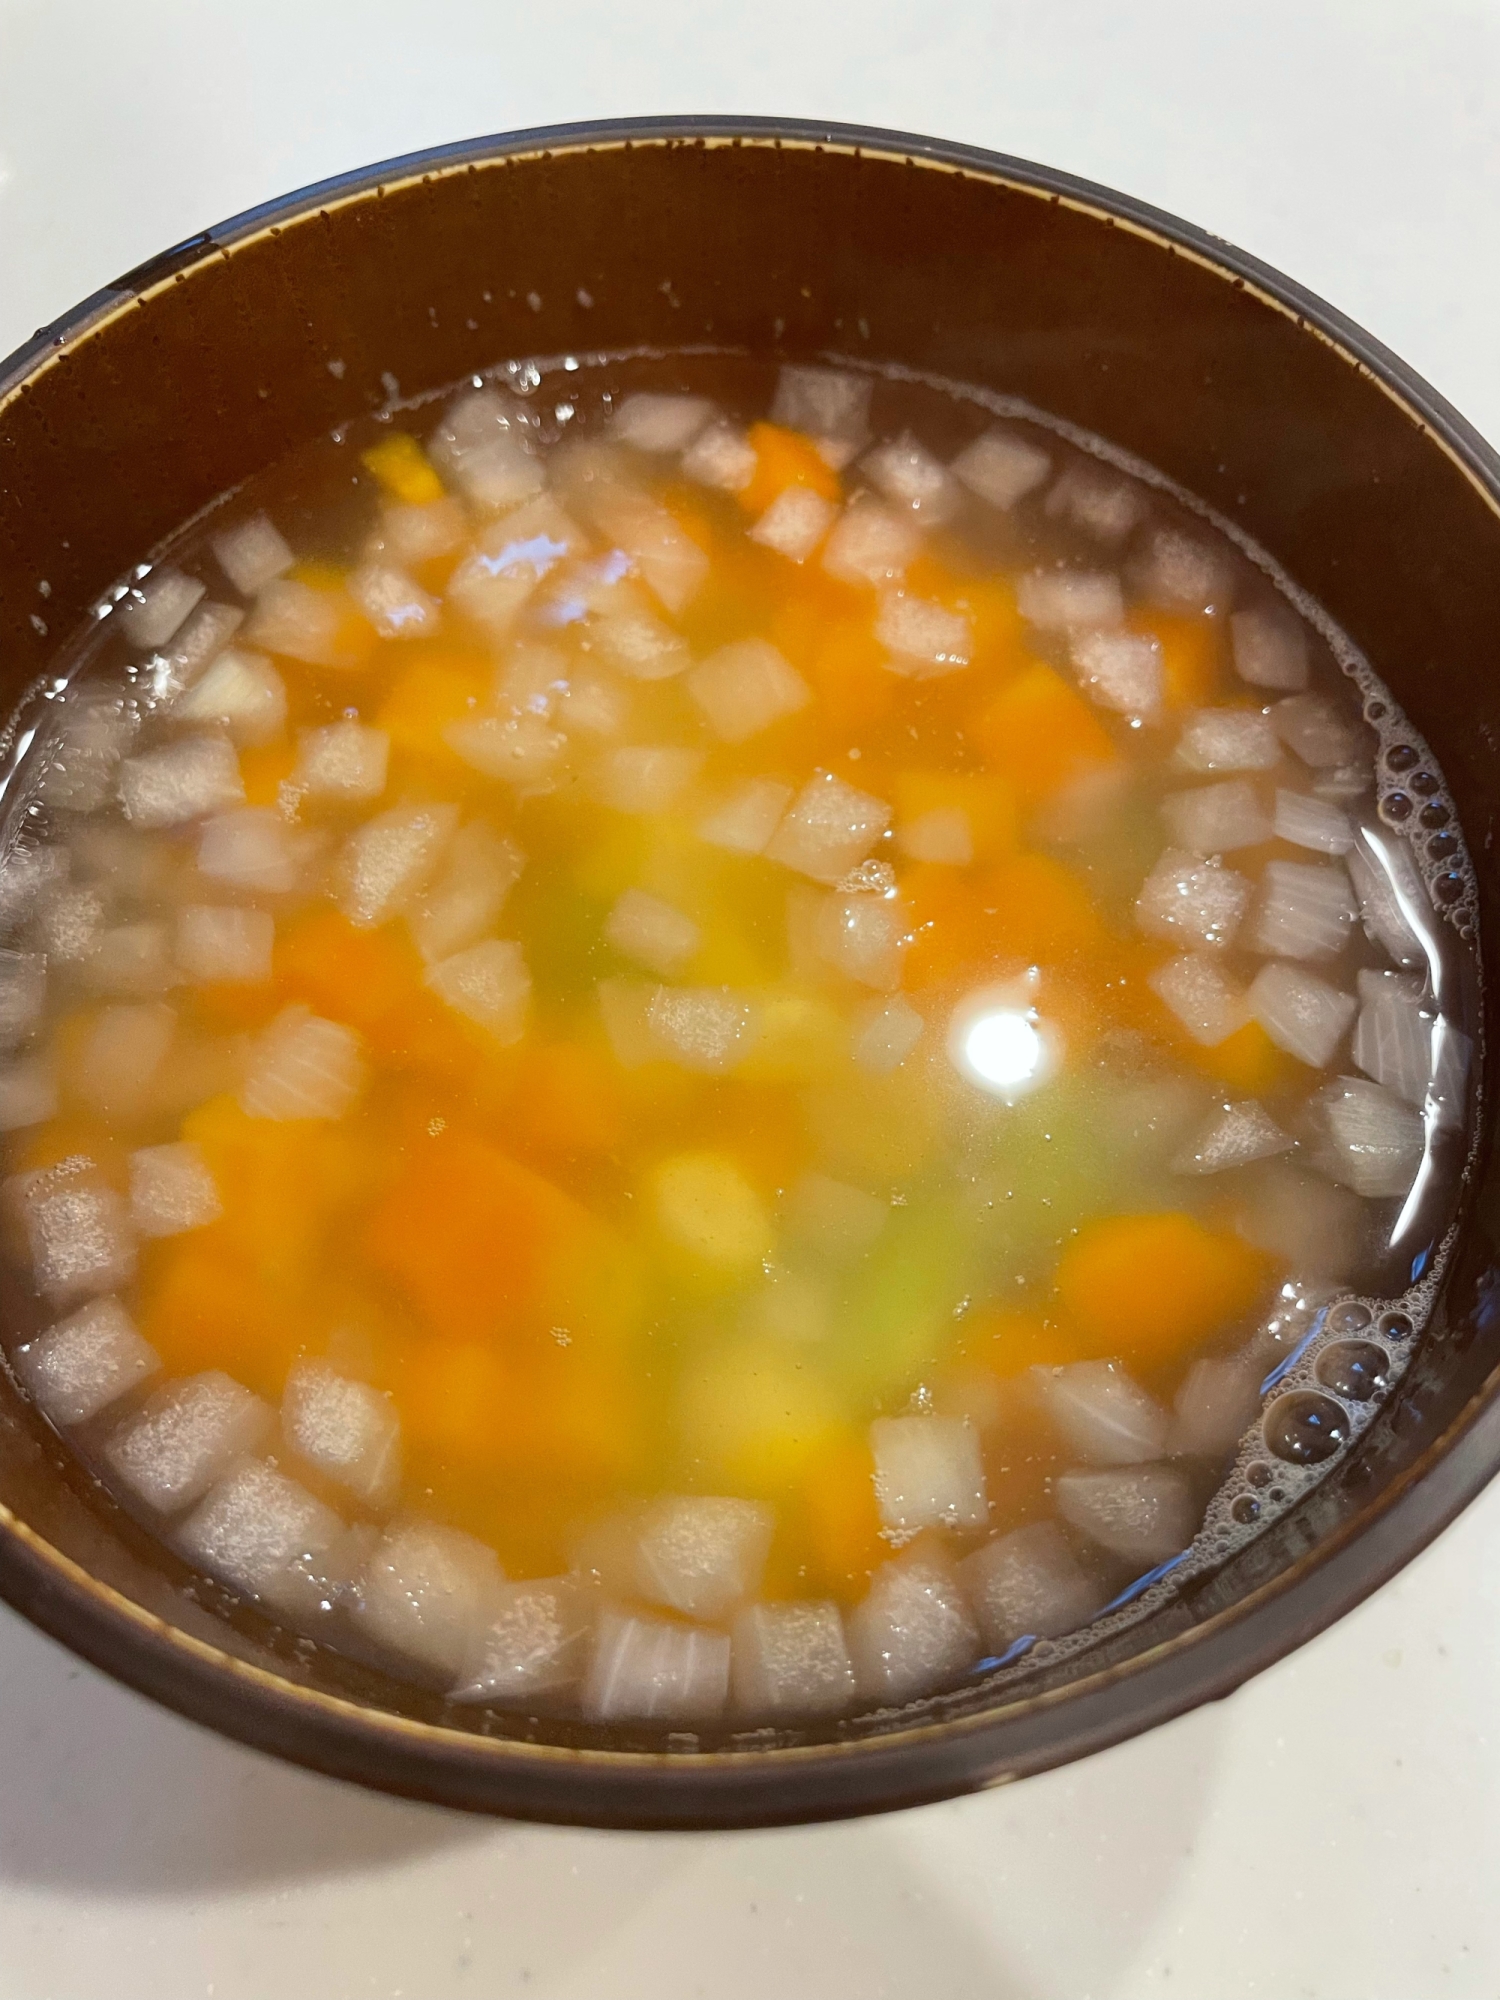 ミックスベジタブルで 超簡単 野菜スープ レシピ 作り方 By Minakichi28 楽天レシピ